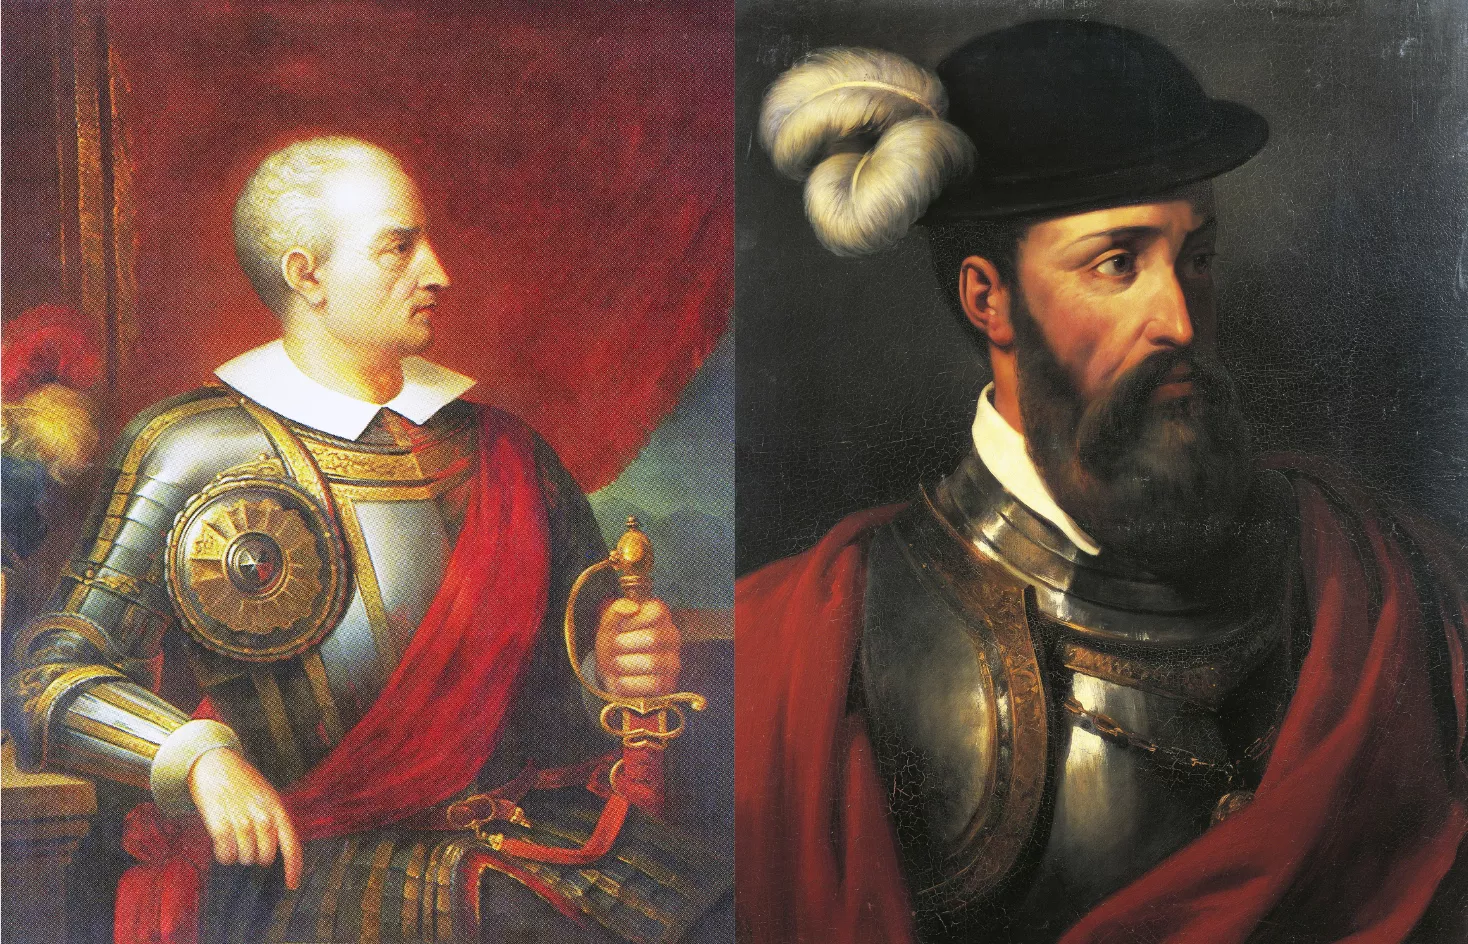 Francisco Pizarro i Diego de Almagro van pujar de rang a l'exèrcit gràcies al valor, la tossuderia i la cobdícia